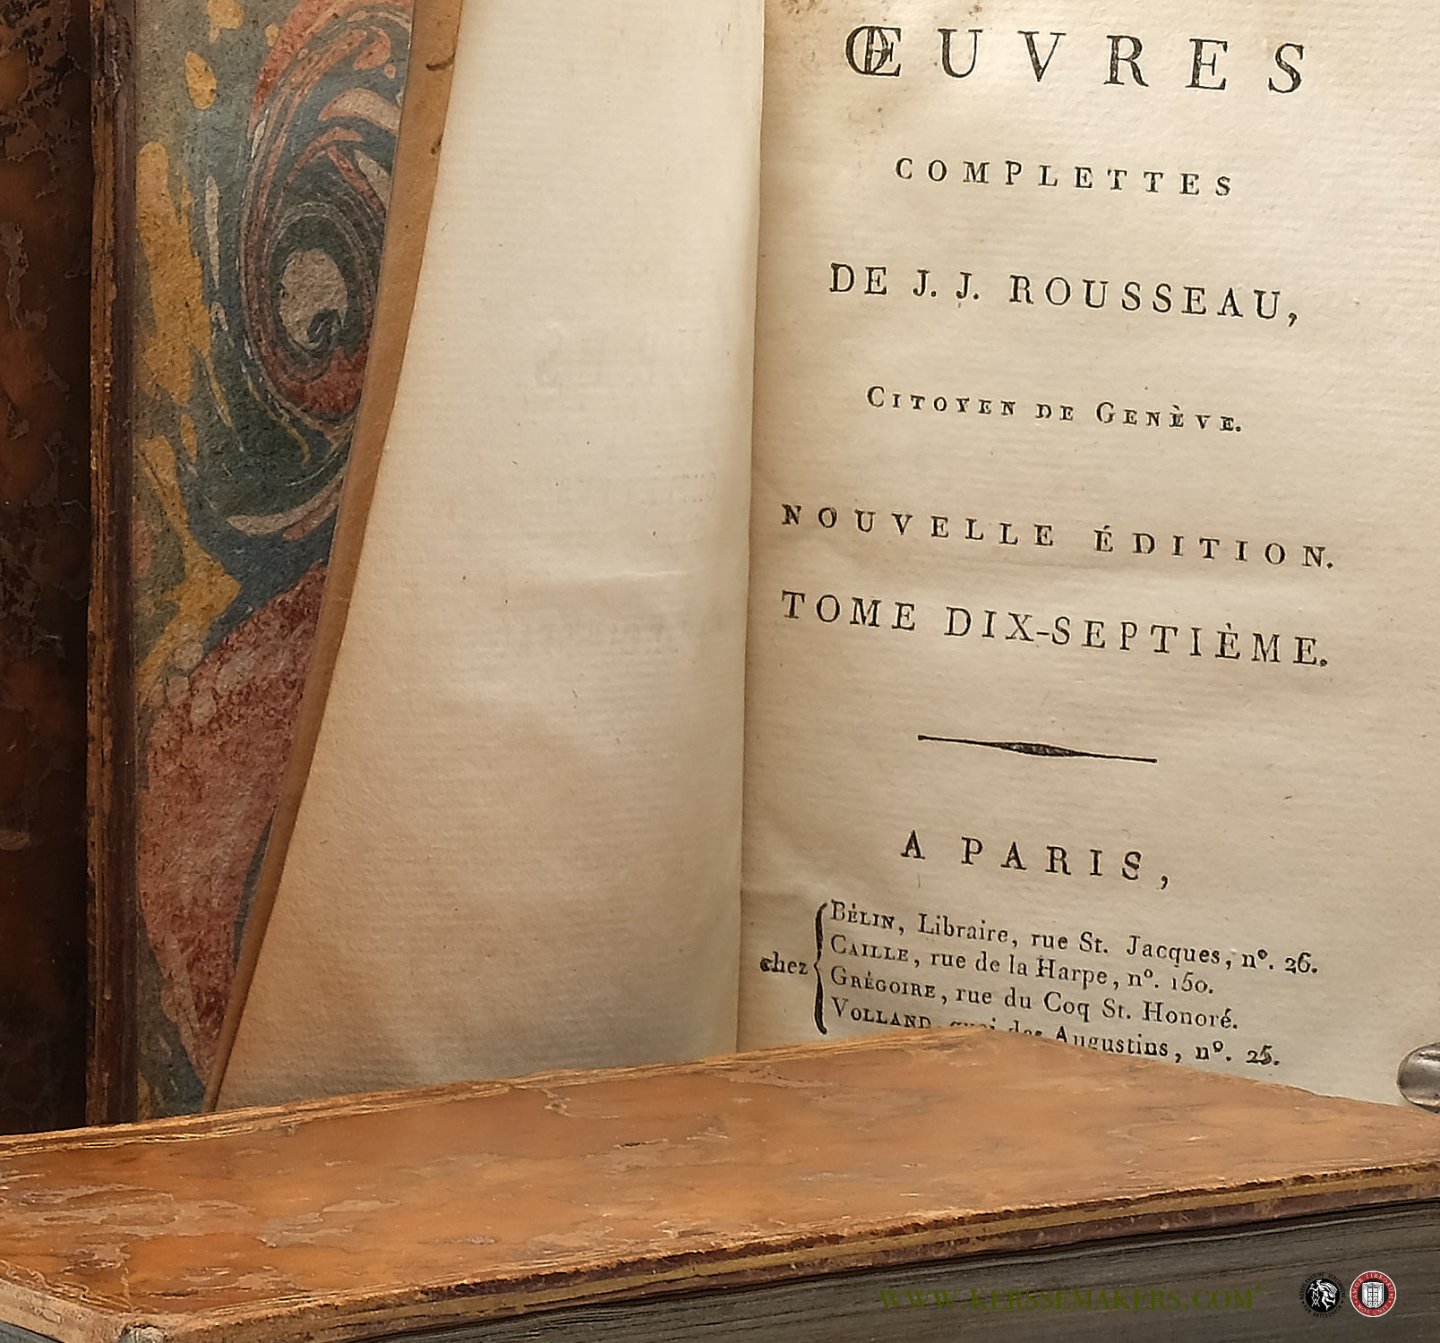 Rousseau, J. J. - Dictionnaire de musique, Tome Premier - Tome troisième, A - Z. (Sub-division of:) Oeuvres complettes. Nouvelle édition. Tome dix-septième - dix-neuvième (and) Tome de planches.